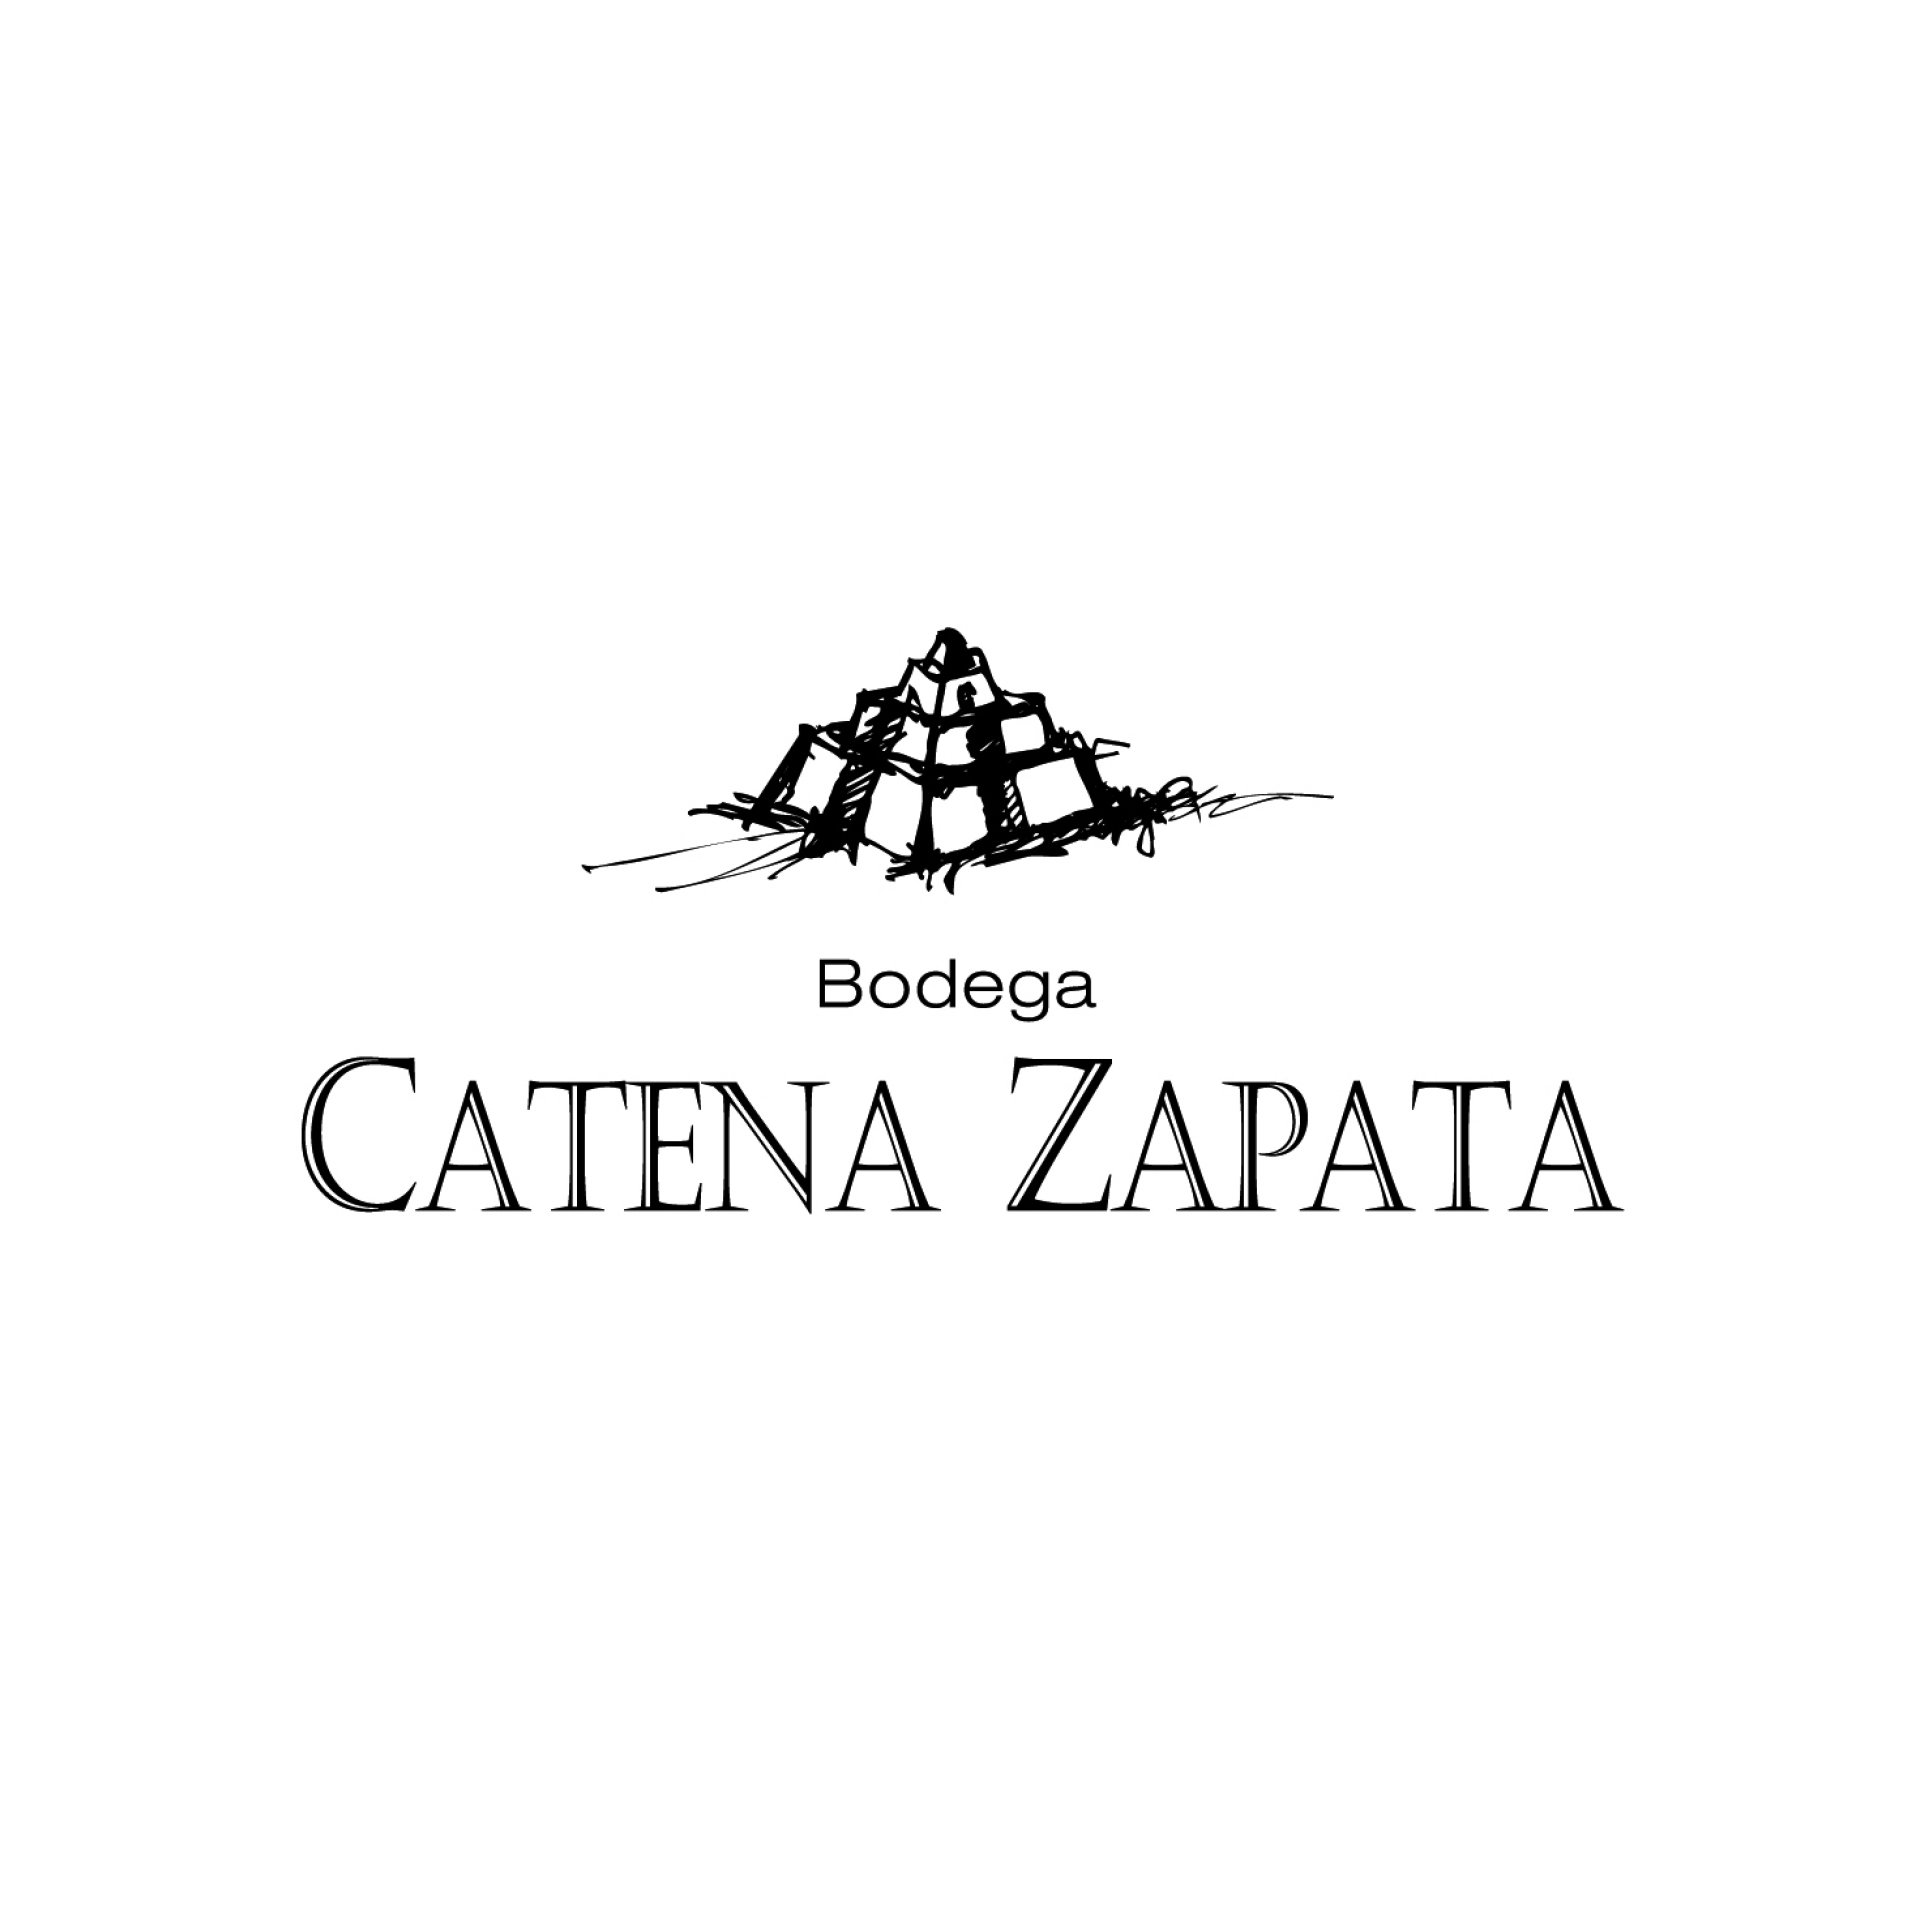 Bodegas Catena Zapata